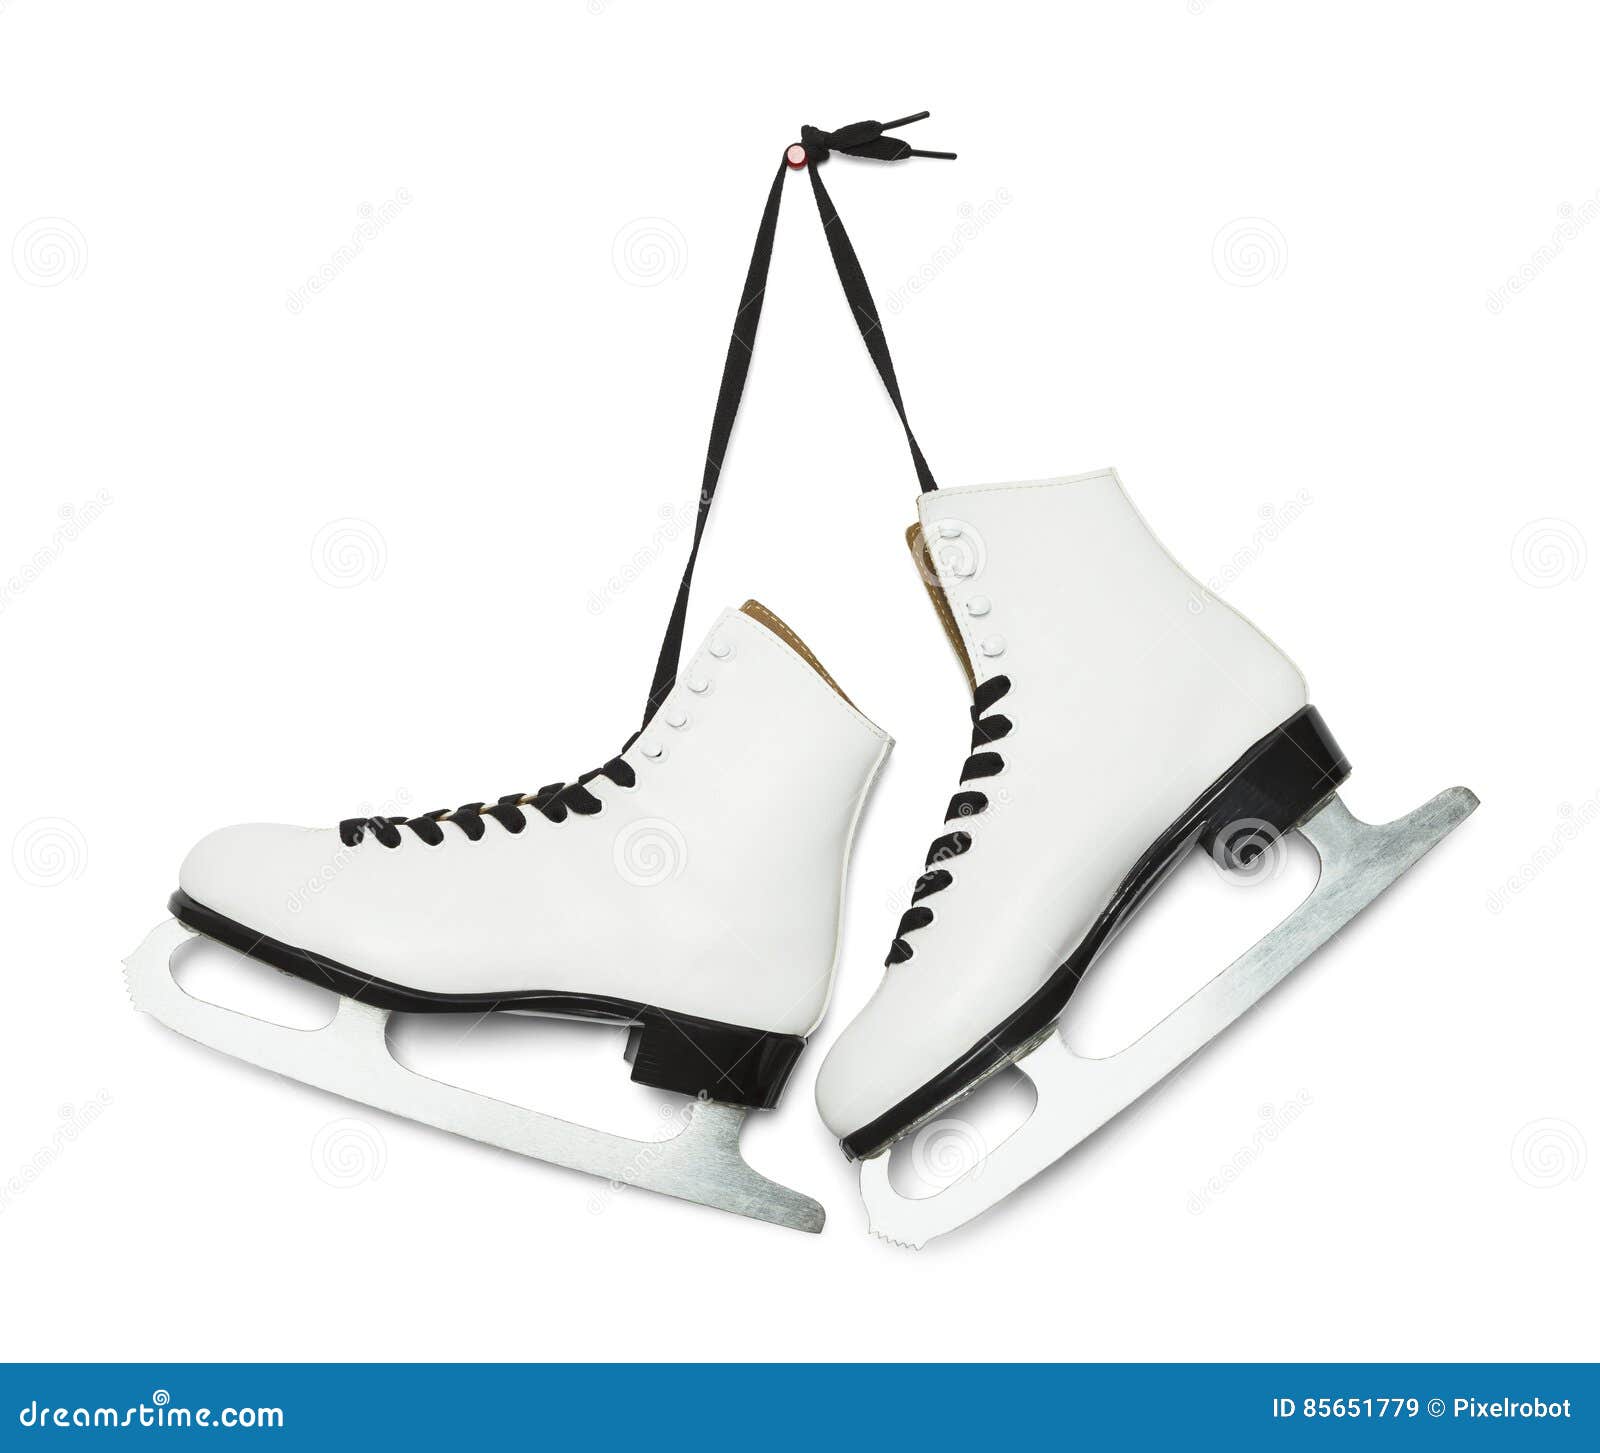 hanging ice skates